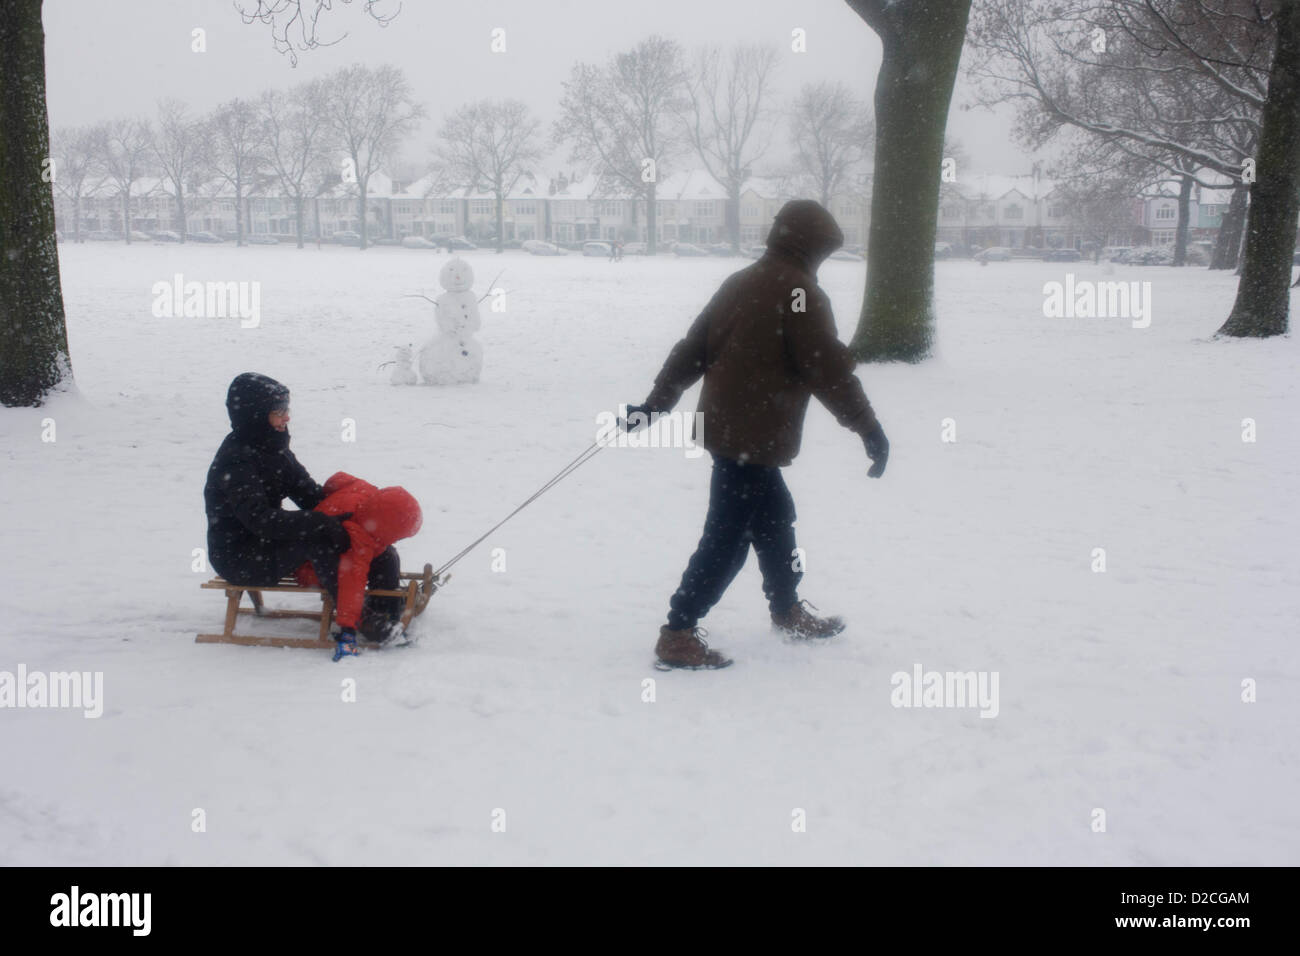 Eine Familie im Schnee genießen ein Wintertag mit ihrem Kind und Schlitten in einer verschneiten South Park in London. Während einer längeren Kälteperiode des schlechten Wetters fiel Schnee kontinuierlich auf das Kapital am Sonntag, so dass Familien die Möglichkeit, die trostlosen Bedingungen genießen hier in Ruskin Park im Stadtteil Lambeth. Ziehen die Mutter und Kind, die auf dem Schlitten fahren, geht der Mann durch Pulver an einem eiskalten Tag wo fällt noch Schnee. Ein Schneemann primitiv gebaut steht im Hintergrund, während weiter unten die Hügel sind Edwardian Periode Häuser unter 100 Jahre alten Eschen. Stockfoto